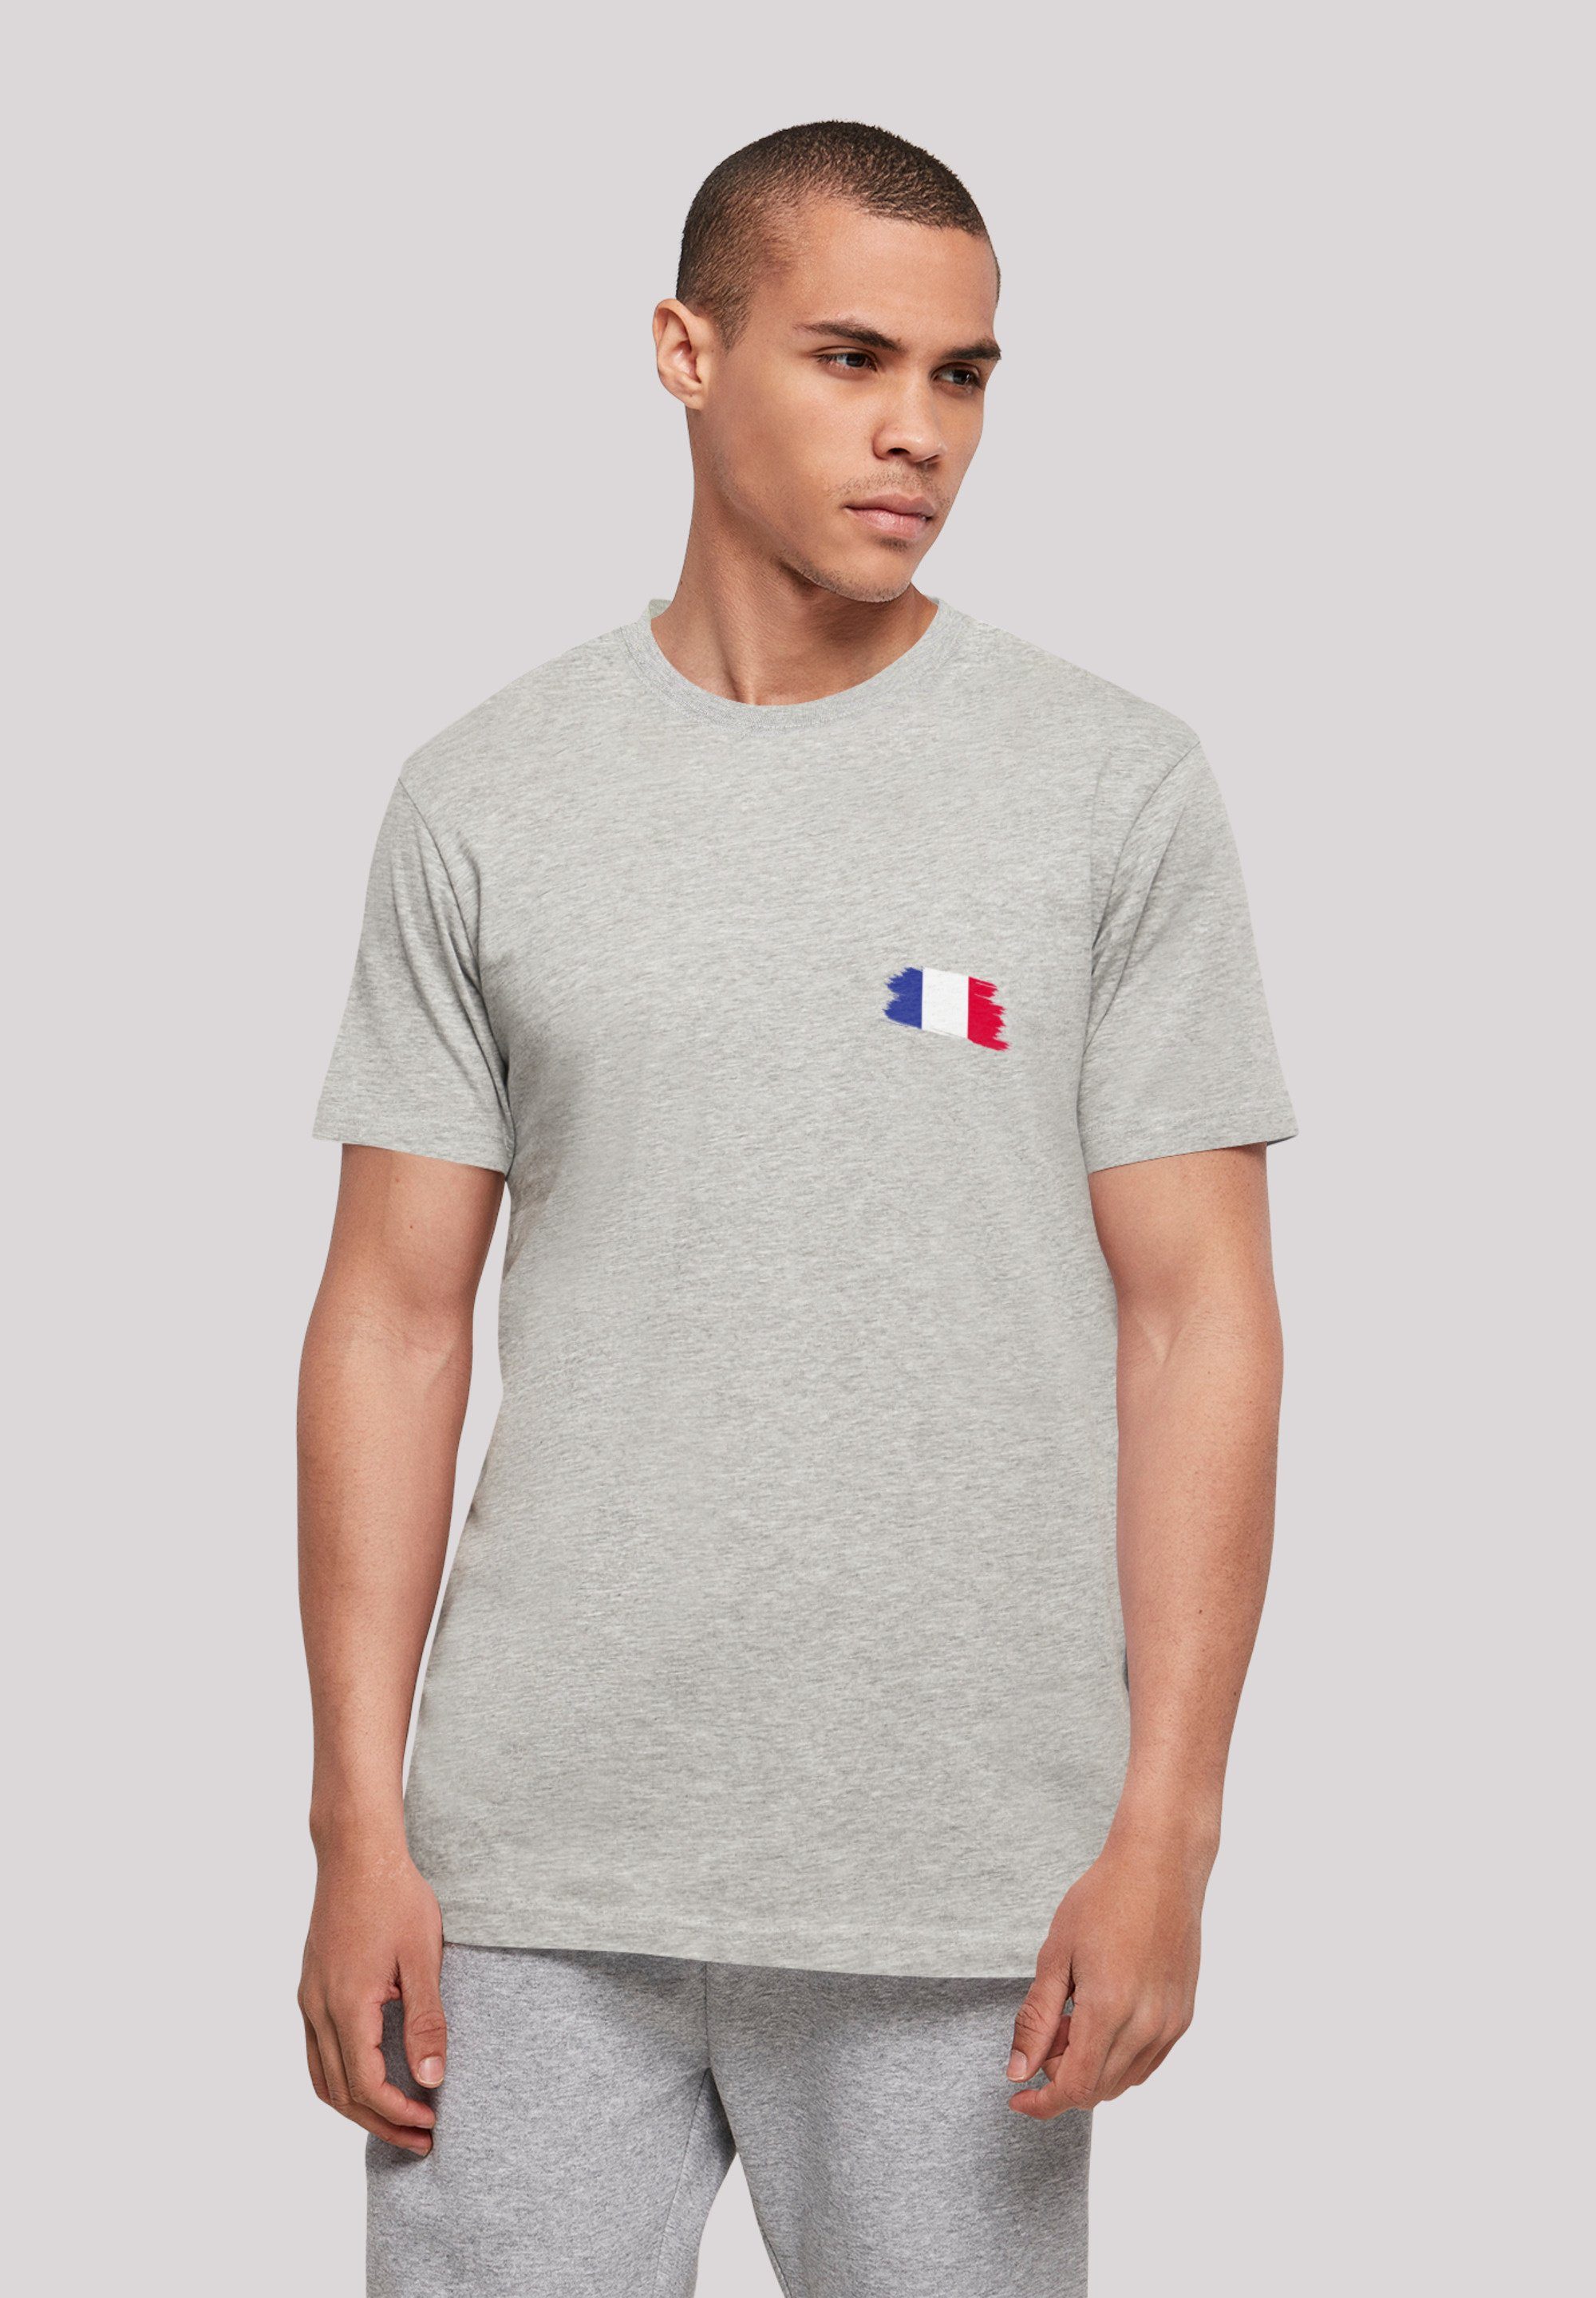 F4NT4STIC T-Shirt Frankreich Flagge France heather Print grey